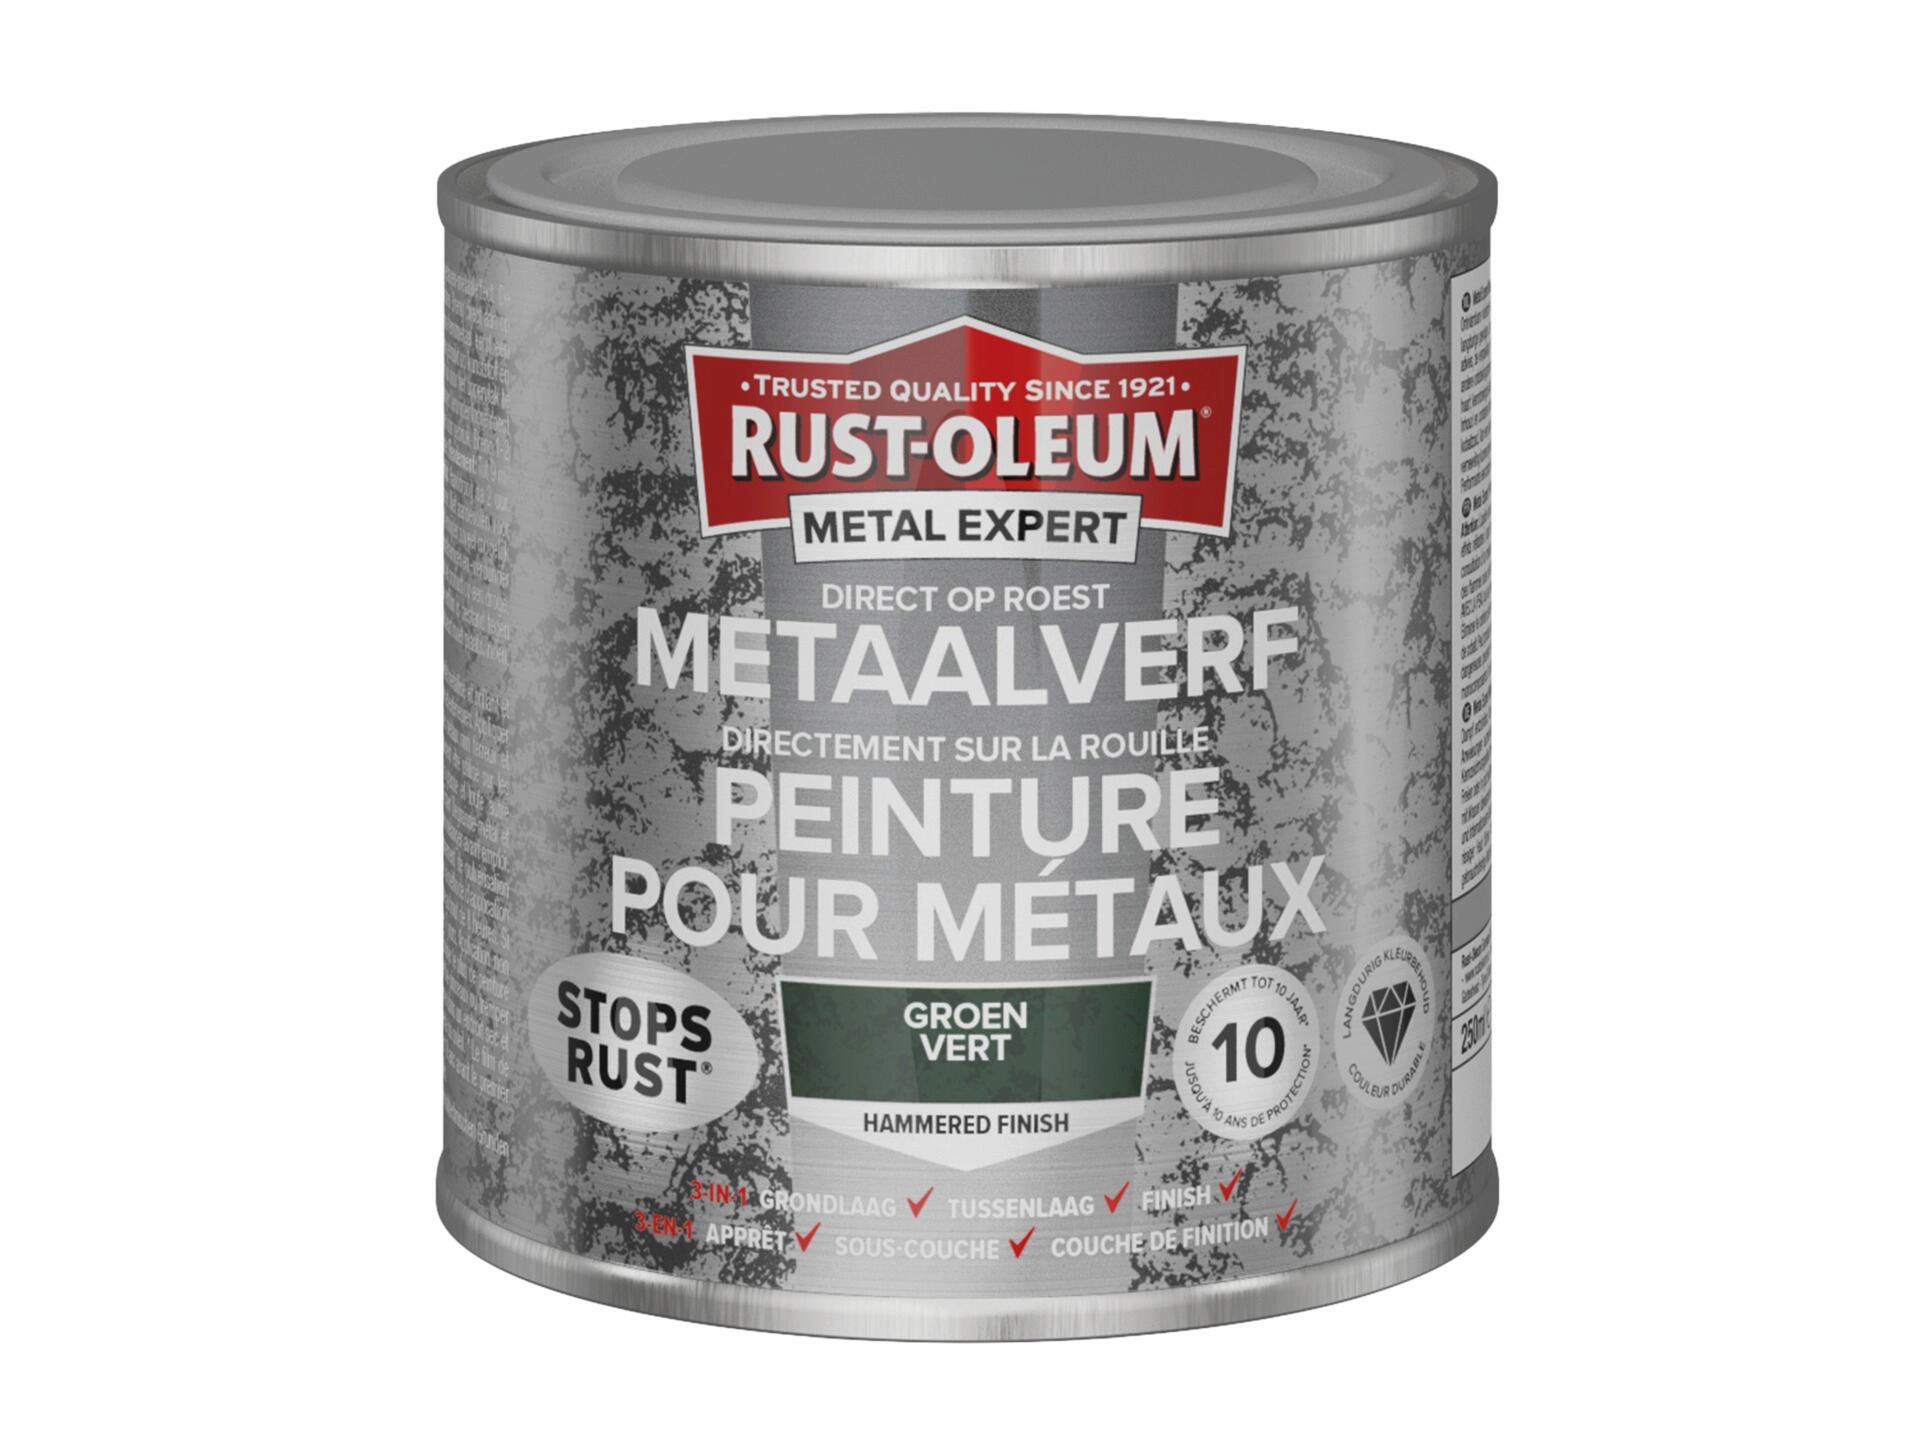 Rust-oleum Metal Expert peinture pour métaux martelé 250ml vert